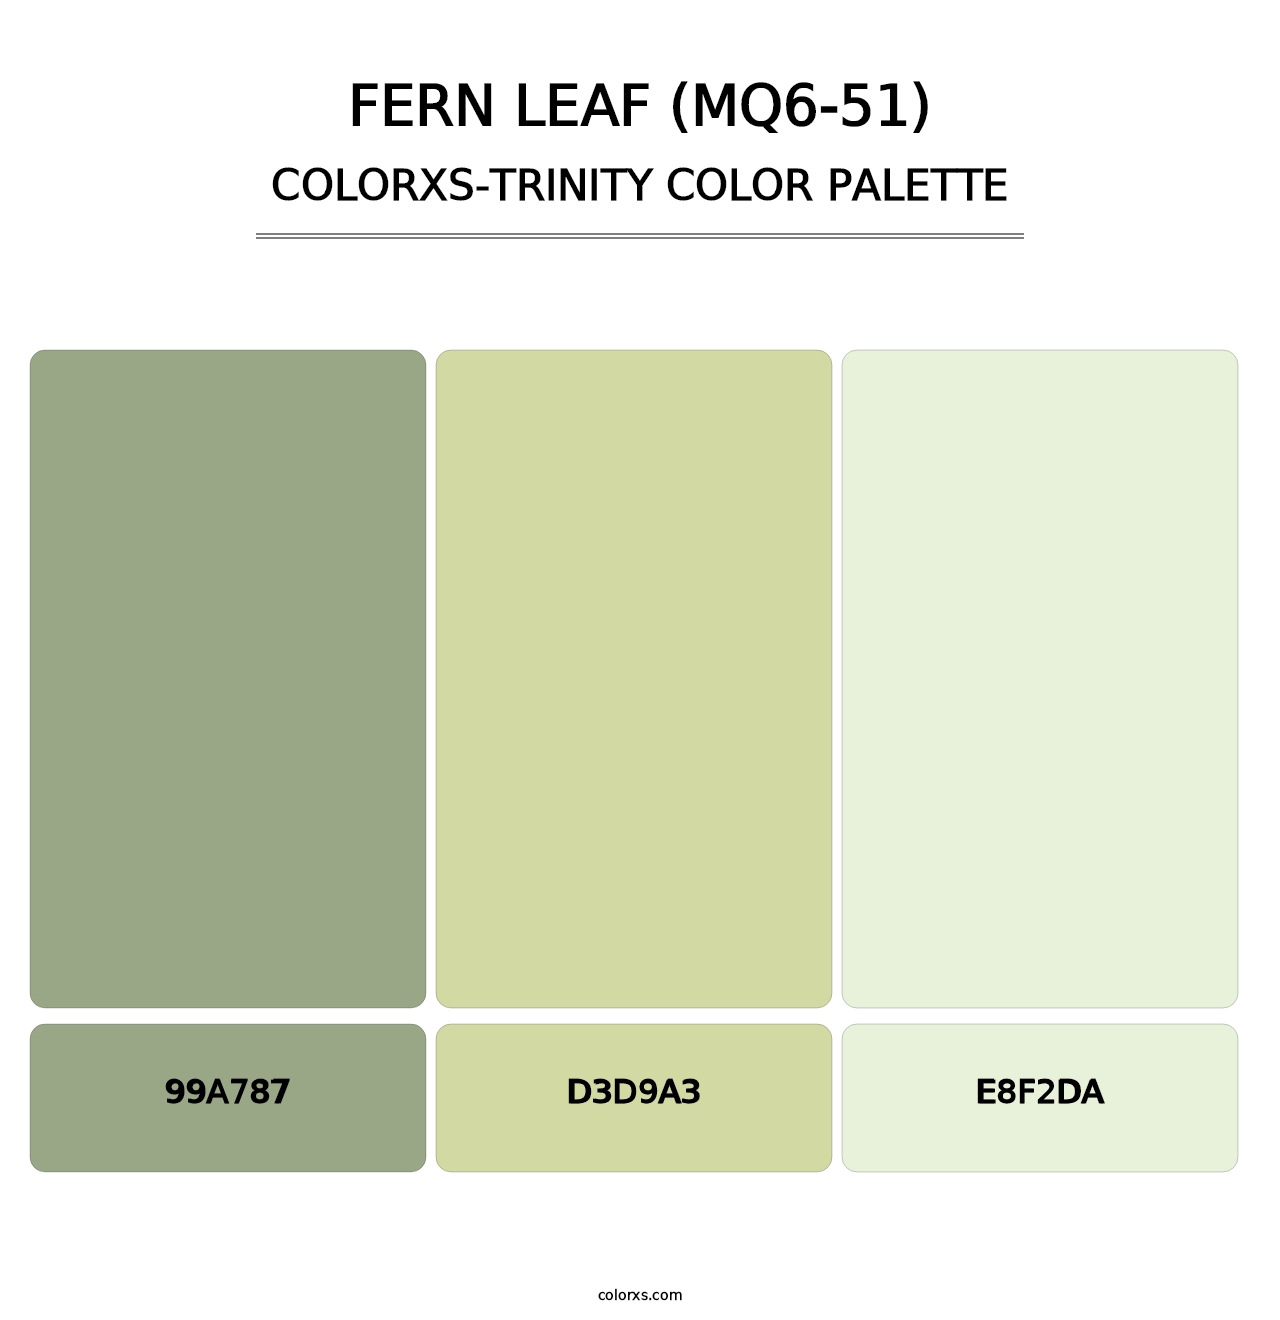 Fern Leaf (MQ6-51) - Colorxs Trinity Palette